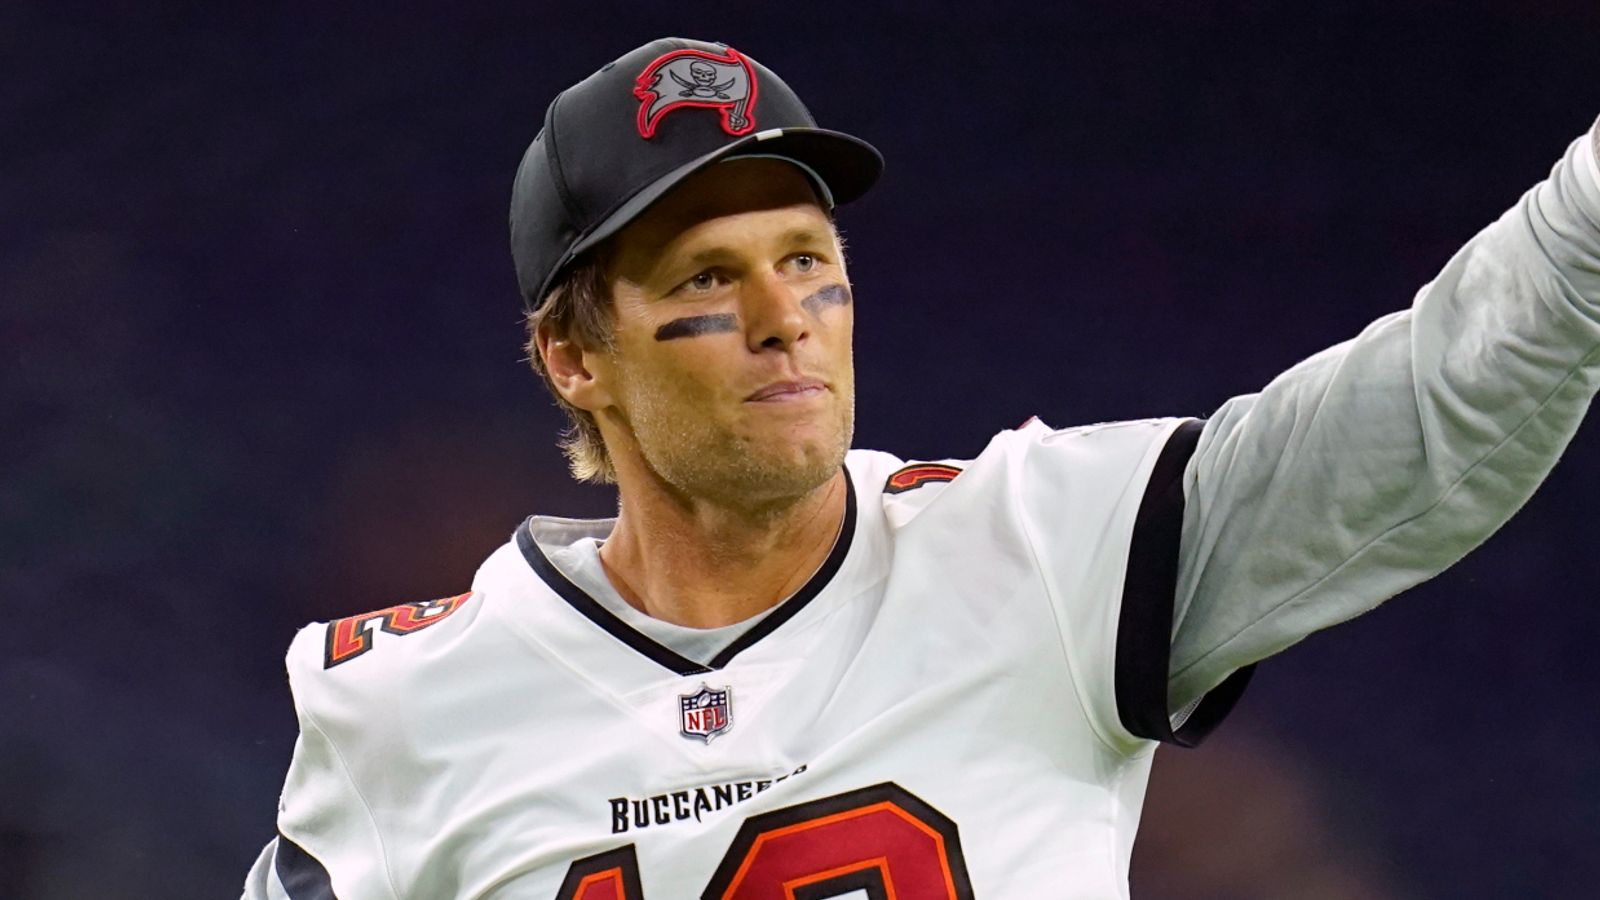 La légende de la NFL, Tom Brady, annule sa retraite et confirme son retour aux Buccaneers de Tampa Bay en 2022 |  Nouvelles de la NFL